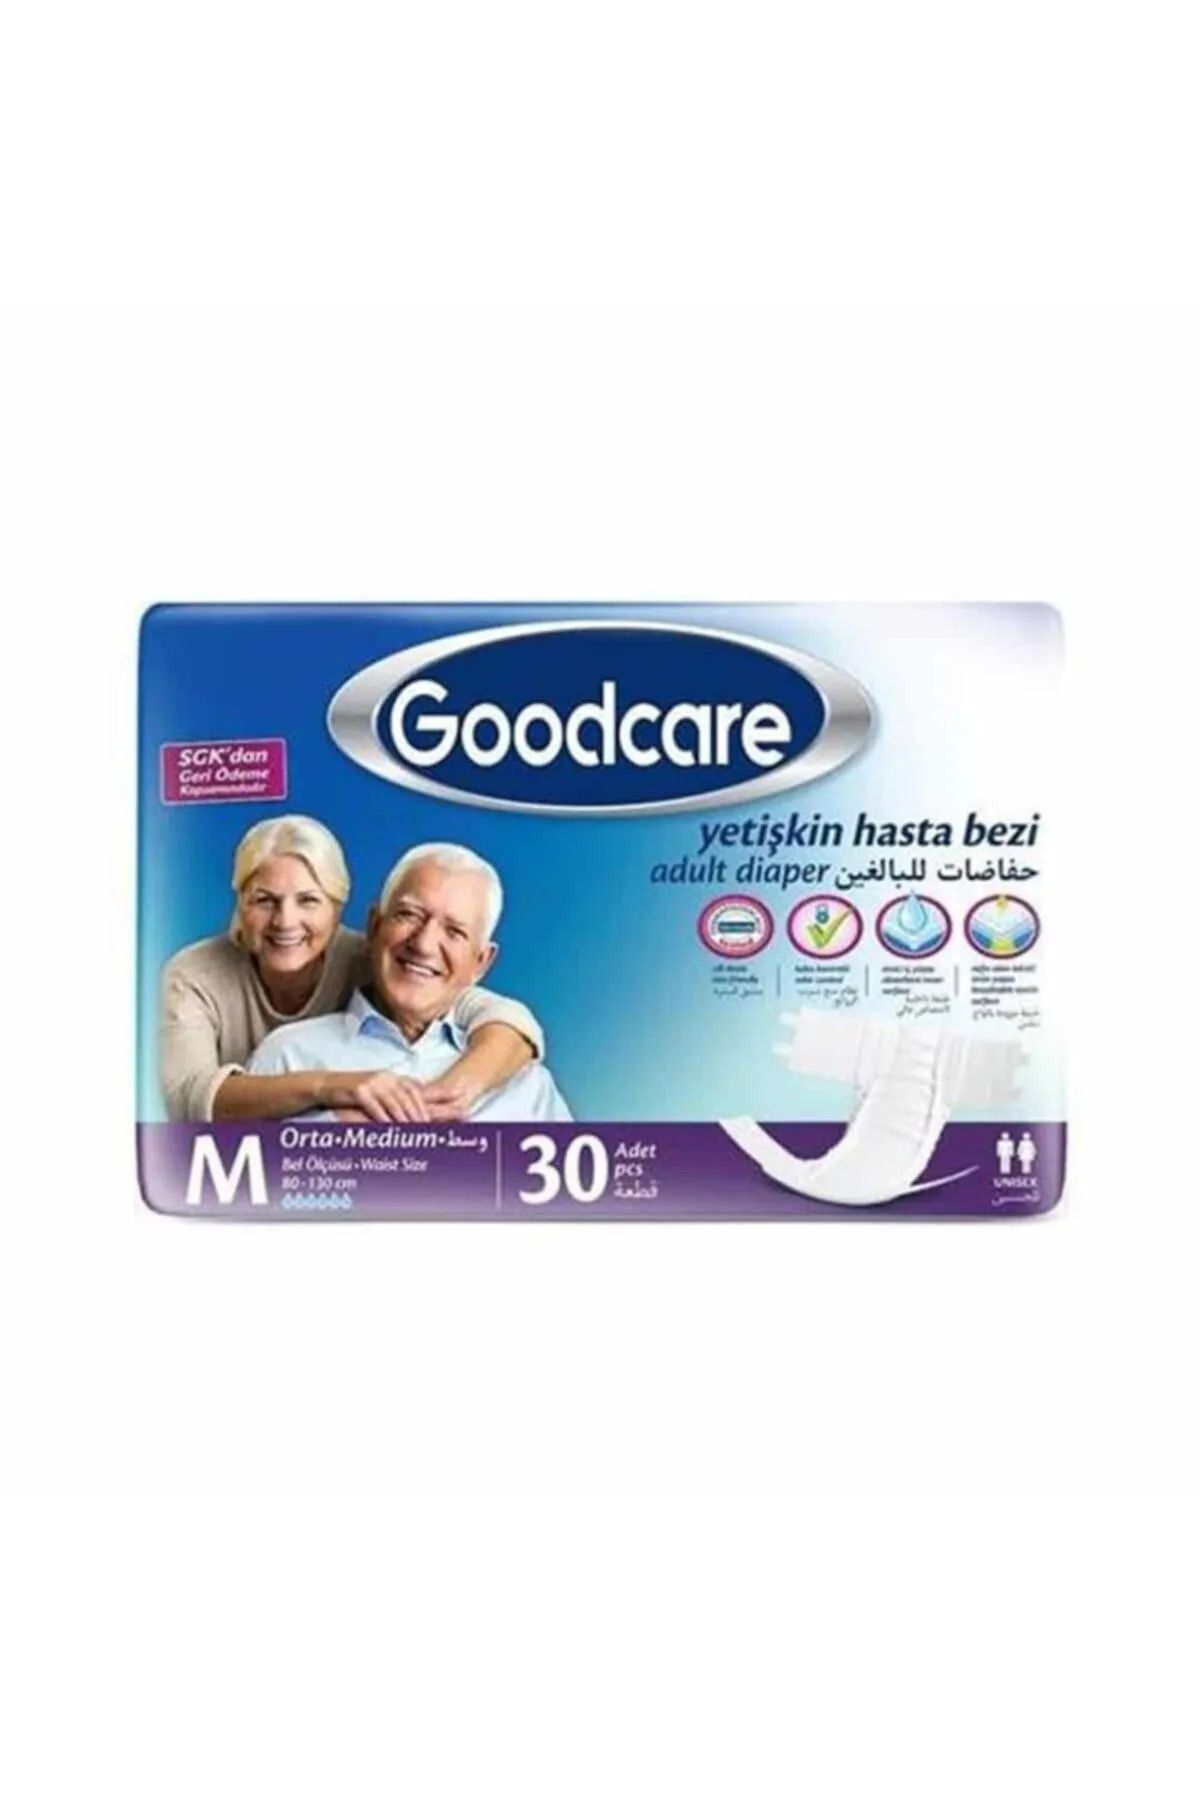 Goodcare Bel Bantlı Yetişkin Hasta Bezi M Ekstra Büyük 30'lu